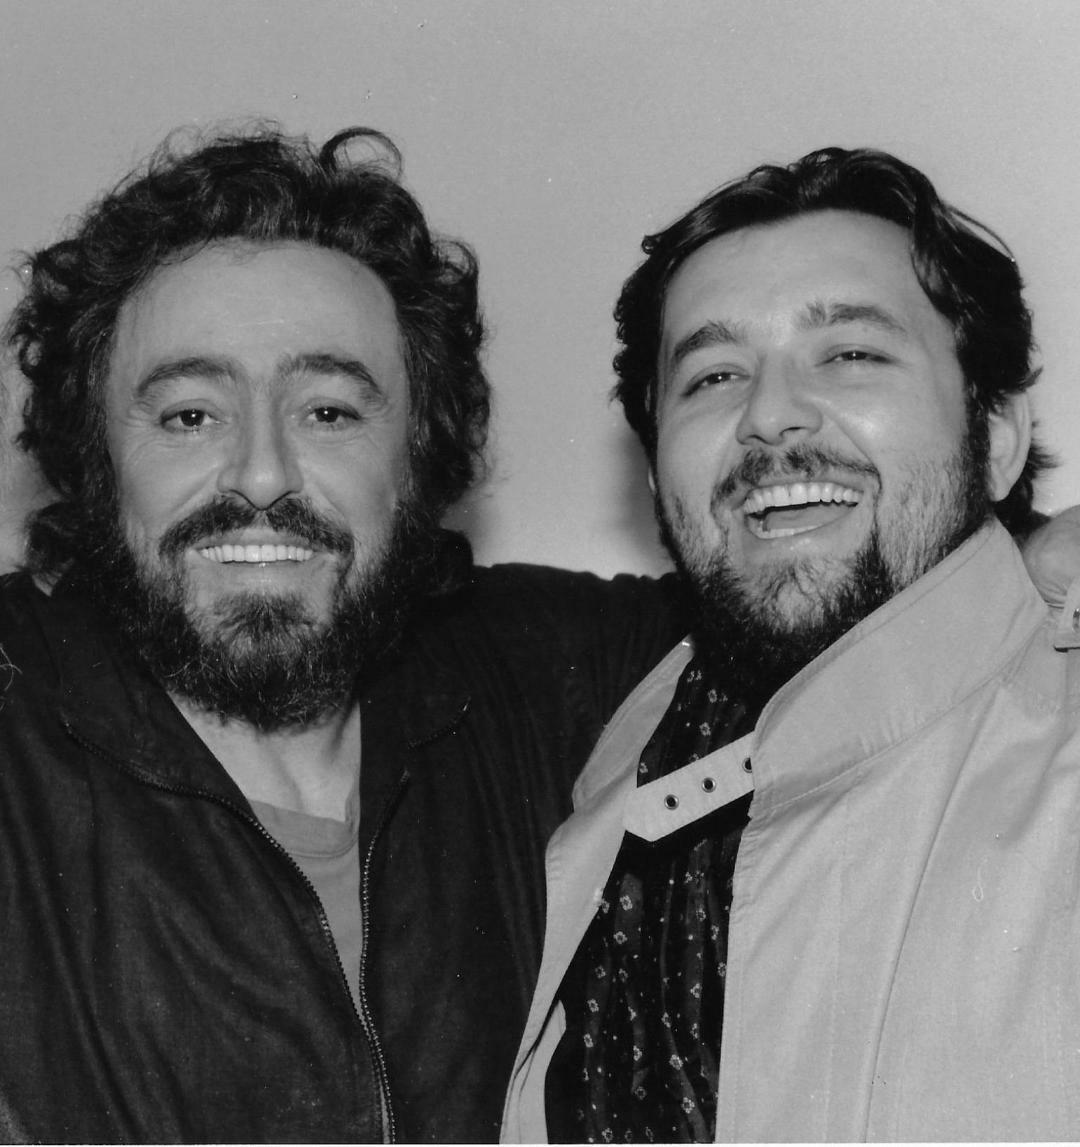 Saltarin con i miti della lirica: «Volevo essere Pavarotti avevo voce, talento e anche peso». Ma ha seguito l'azienda di famiglia